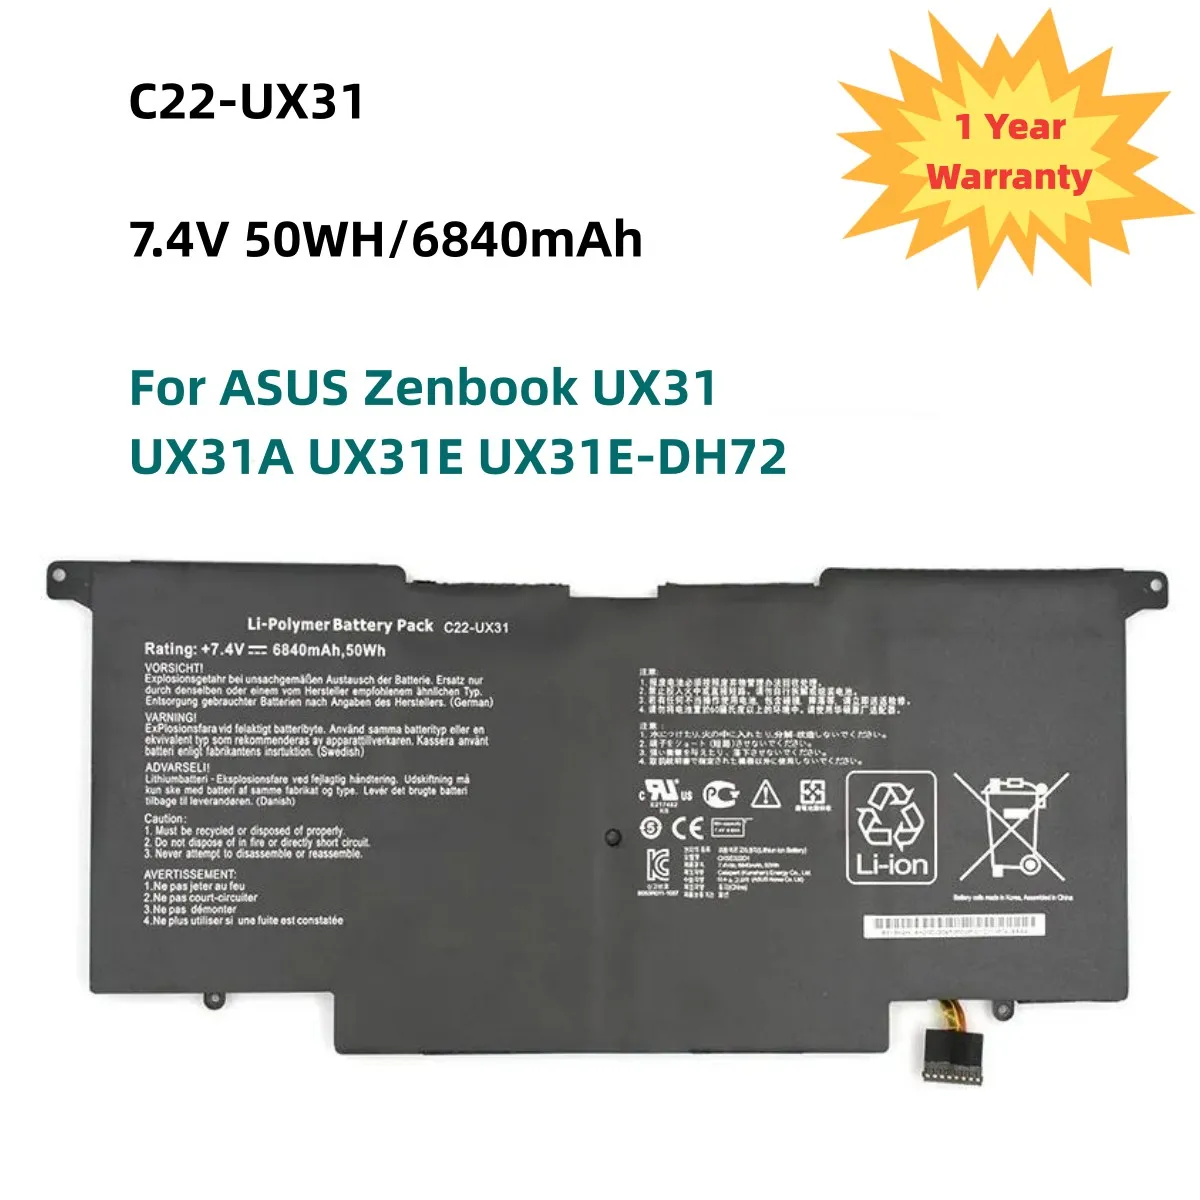 

New C22-UX31 Laptop Battery for ASUS Zenbook UX31 UX31A UX31E UX31E-DH72 C22-UX31 C23-UX31 7.4V 50WH/6840mAh